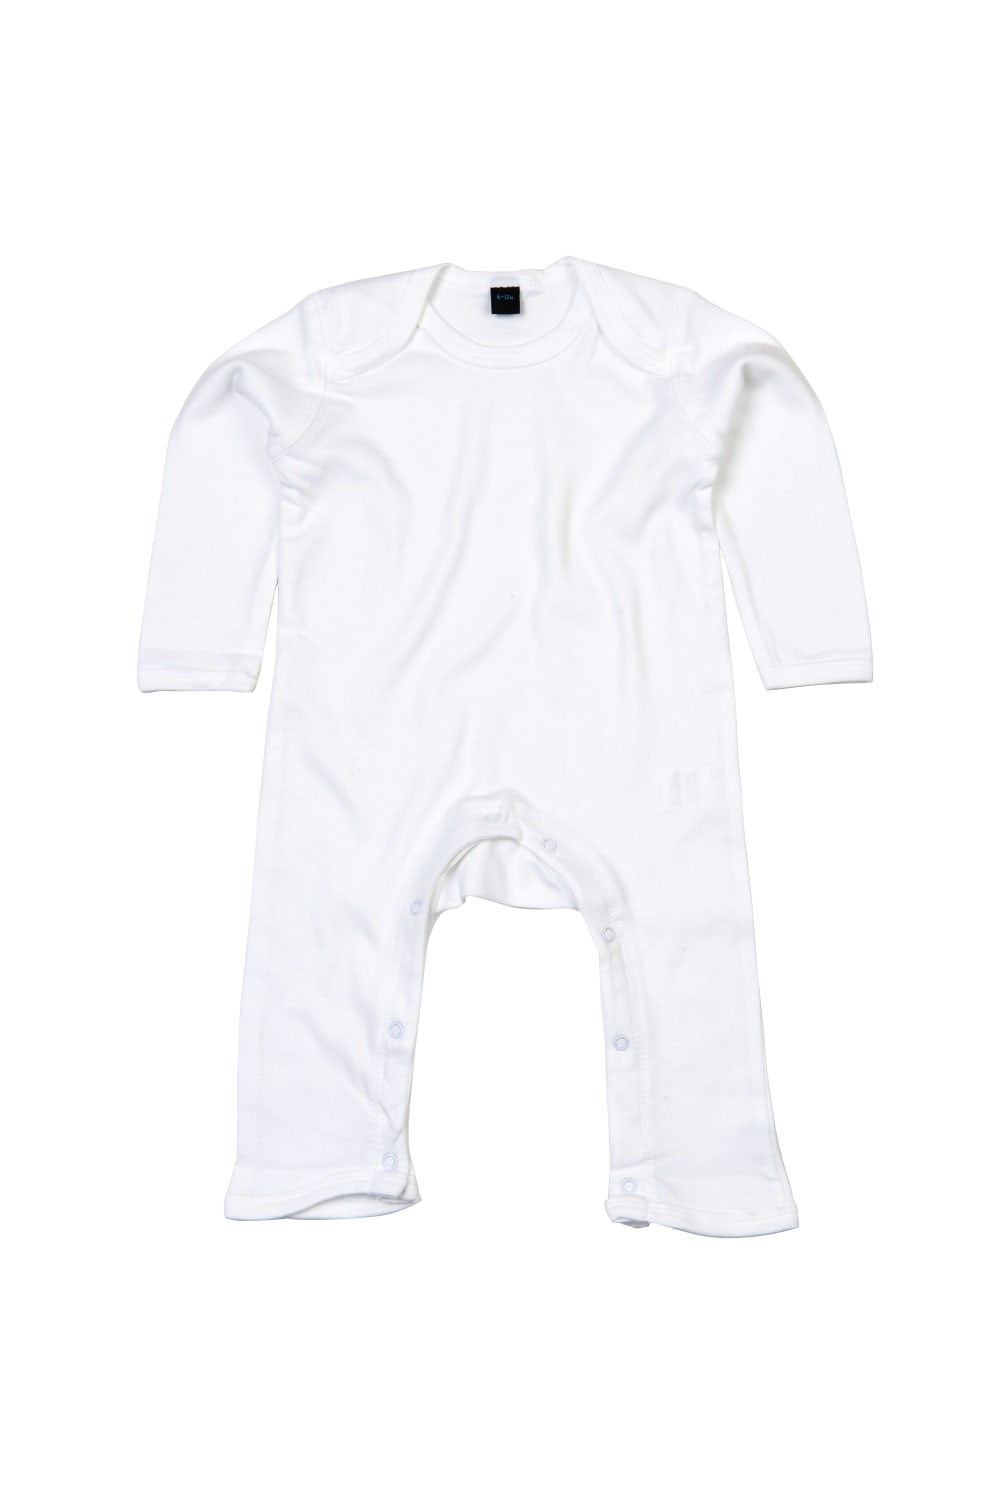 Babybugz Unisex Baby Long Sleeved Rompersuit (White)